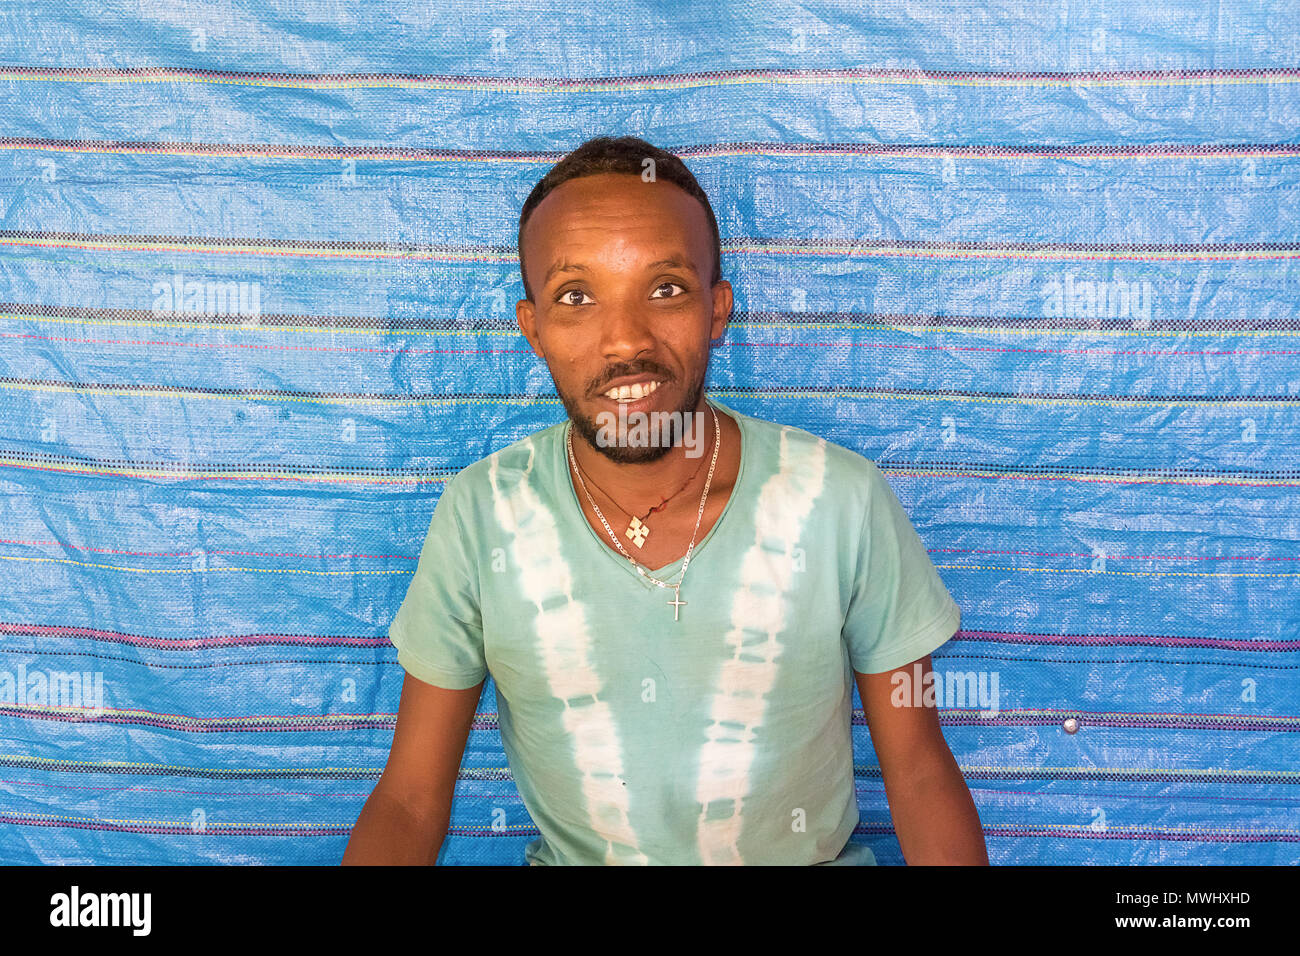 Seraba, Éthiopie - Février 7, 2015 : l'homme est jeune Éthiopienne coin en face de la maison dans un petit village en Éthiopie. Seraba Banque D'Images